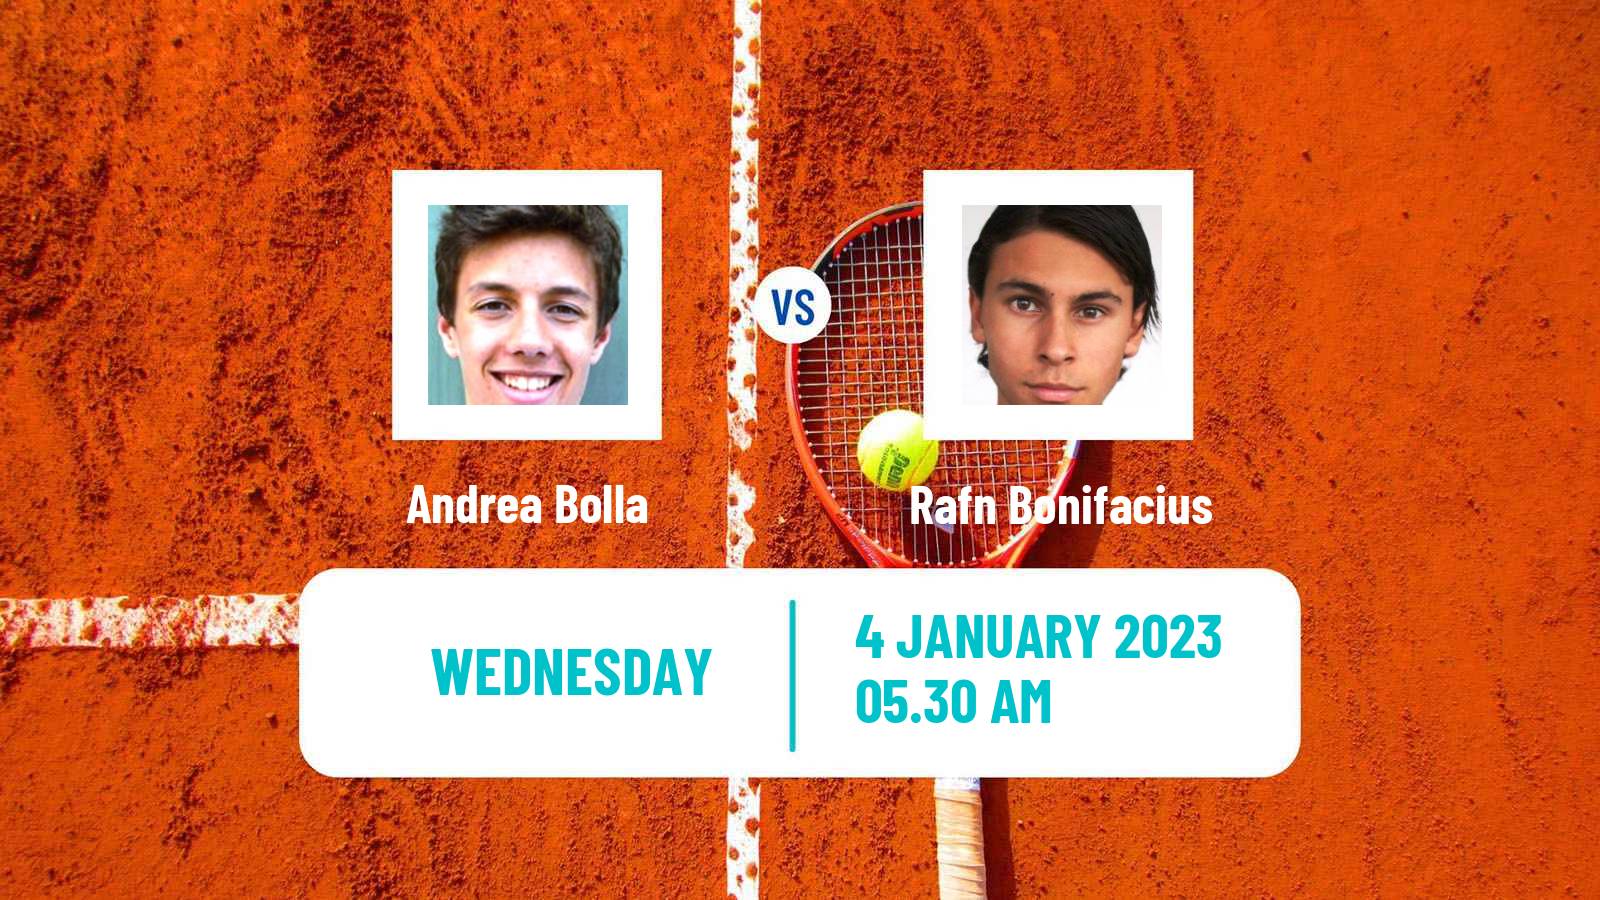 Tennis ITF Tournaments Andrea Bolla - Rafn Bonifacius